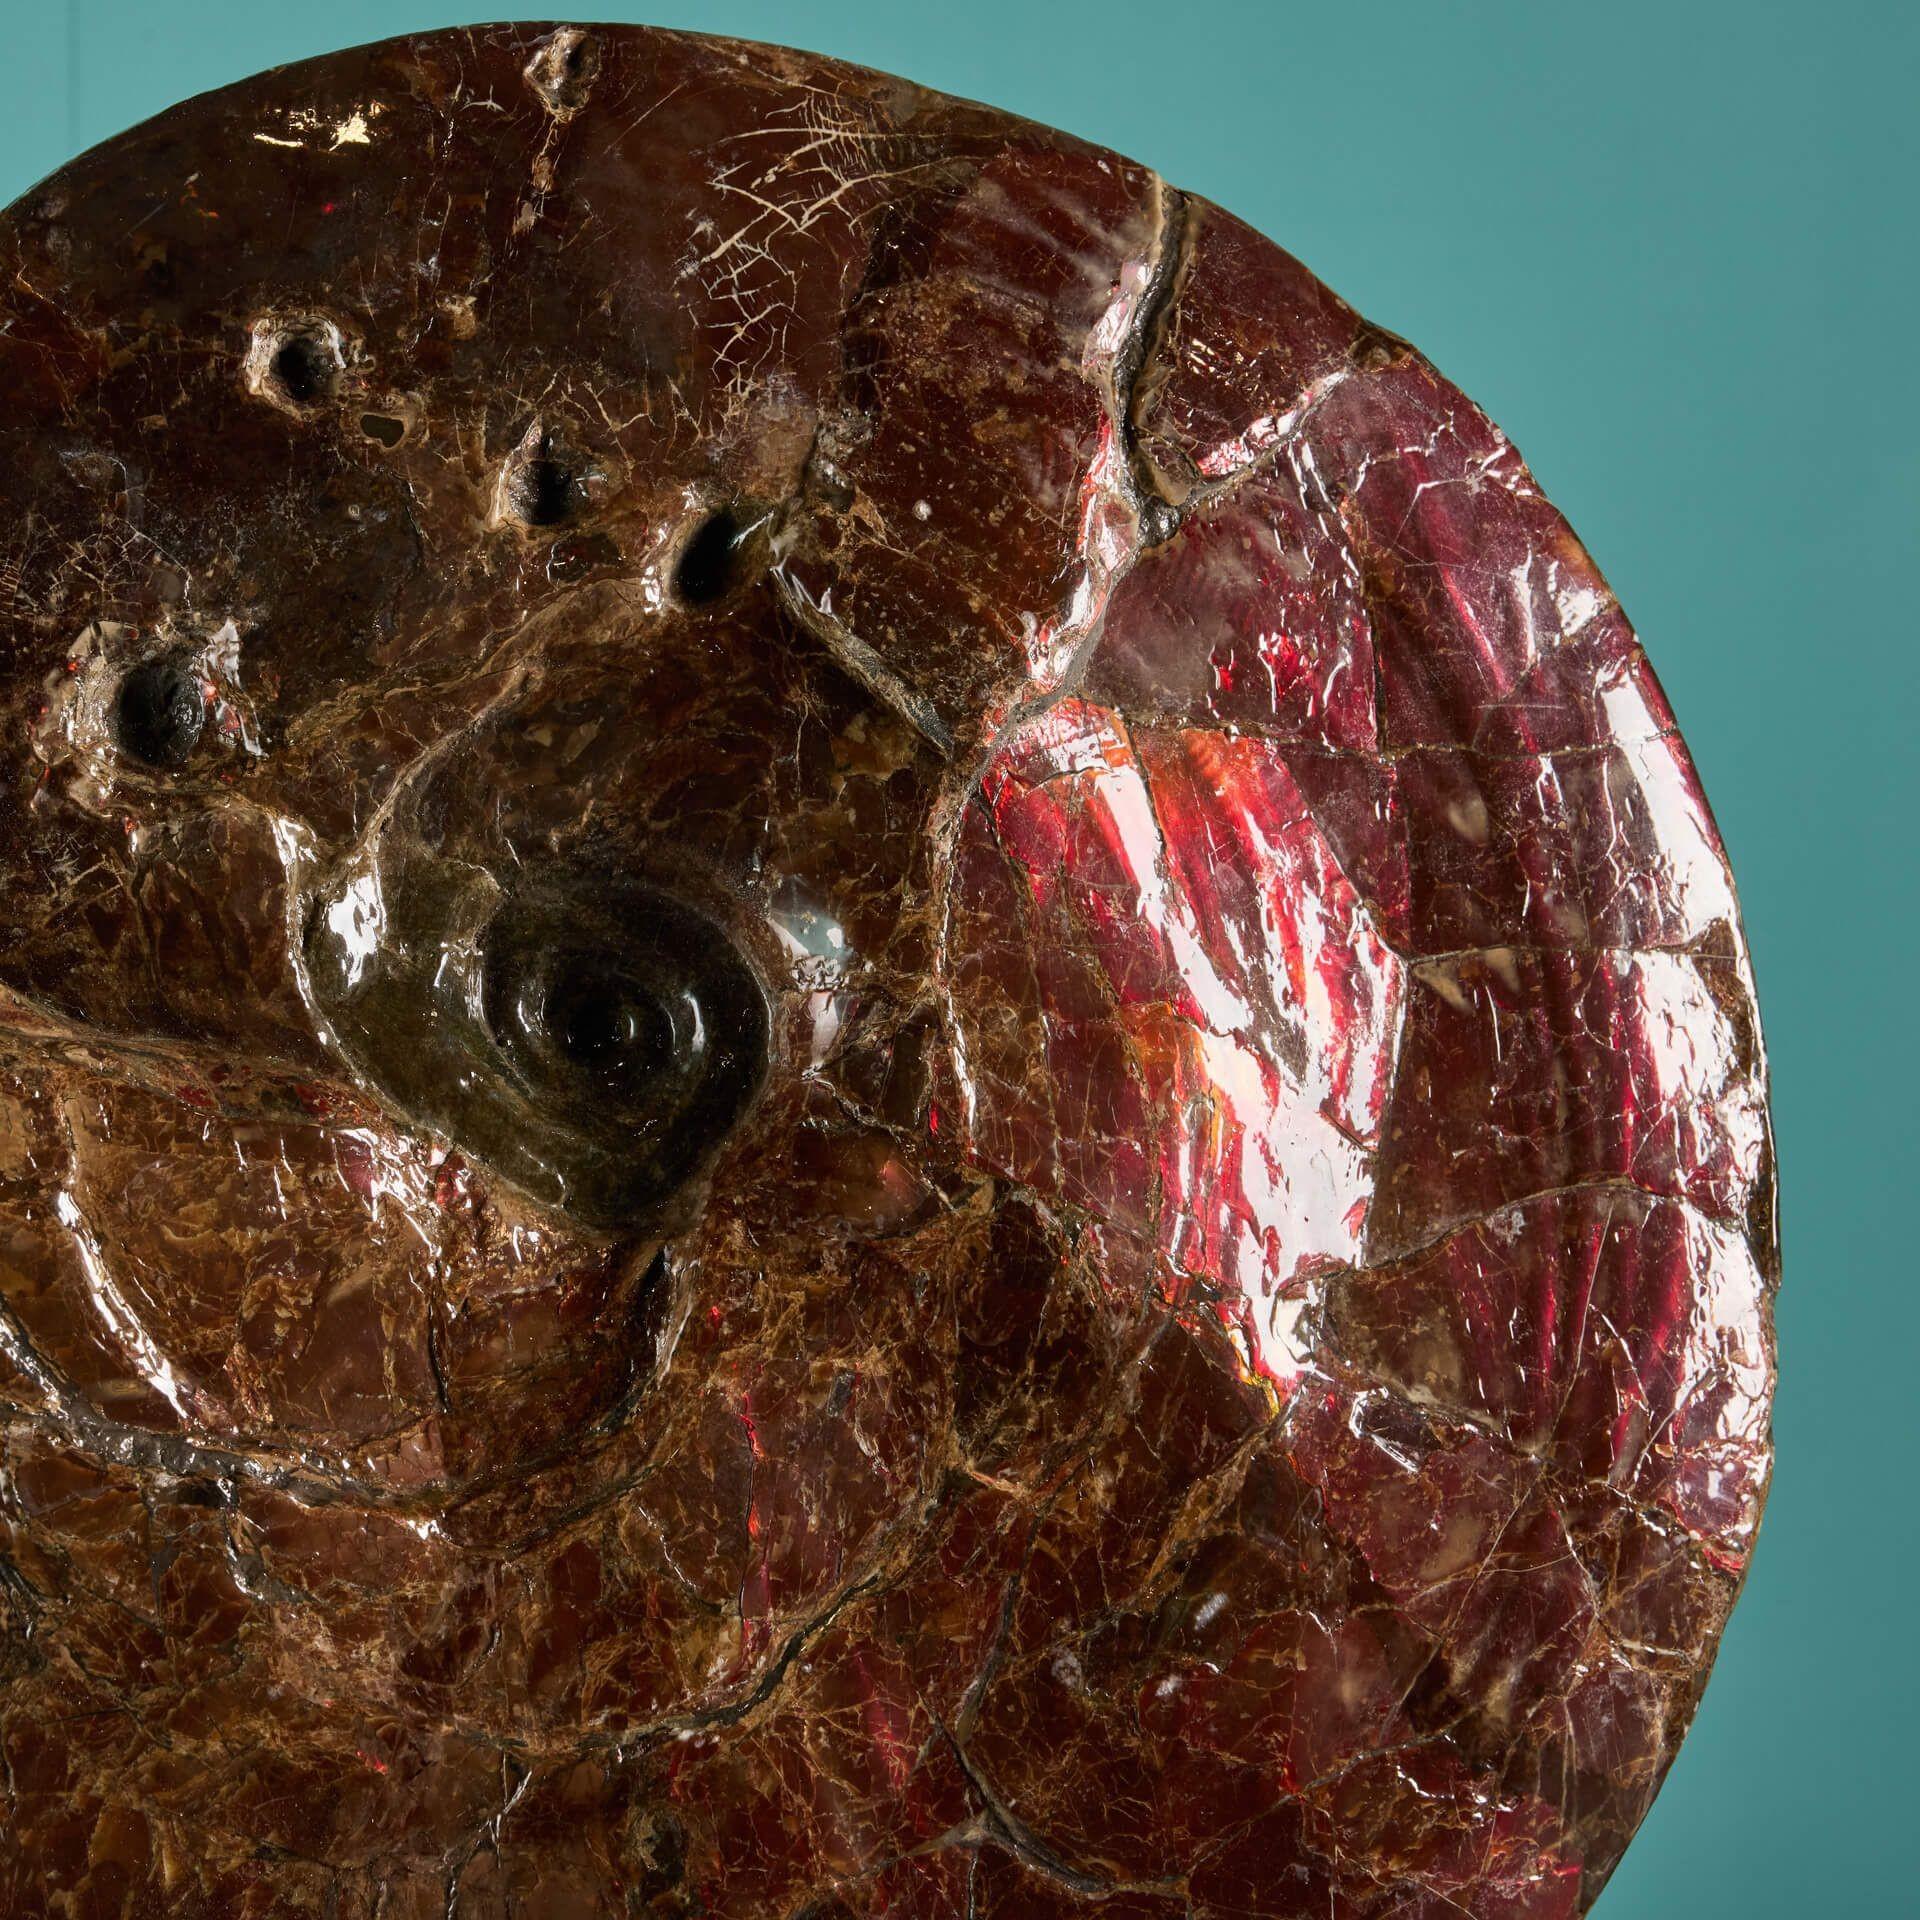 Ein großes, rot schillerndes Ammonitenfossil aus der späten Kreidezeit (vor 100,5 bis 66 Millionen Jahren). Dieser riesige Plancenticeras-Ammonit ist etwa 16 Zentimeter groß und hat einen irisierenden Glanz, der einen leuchtend roten Farbton zeigt.